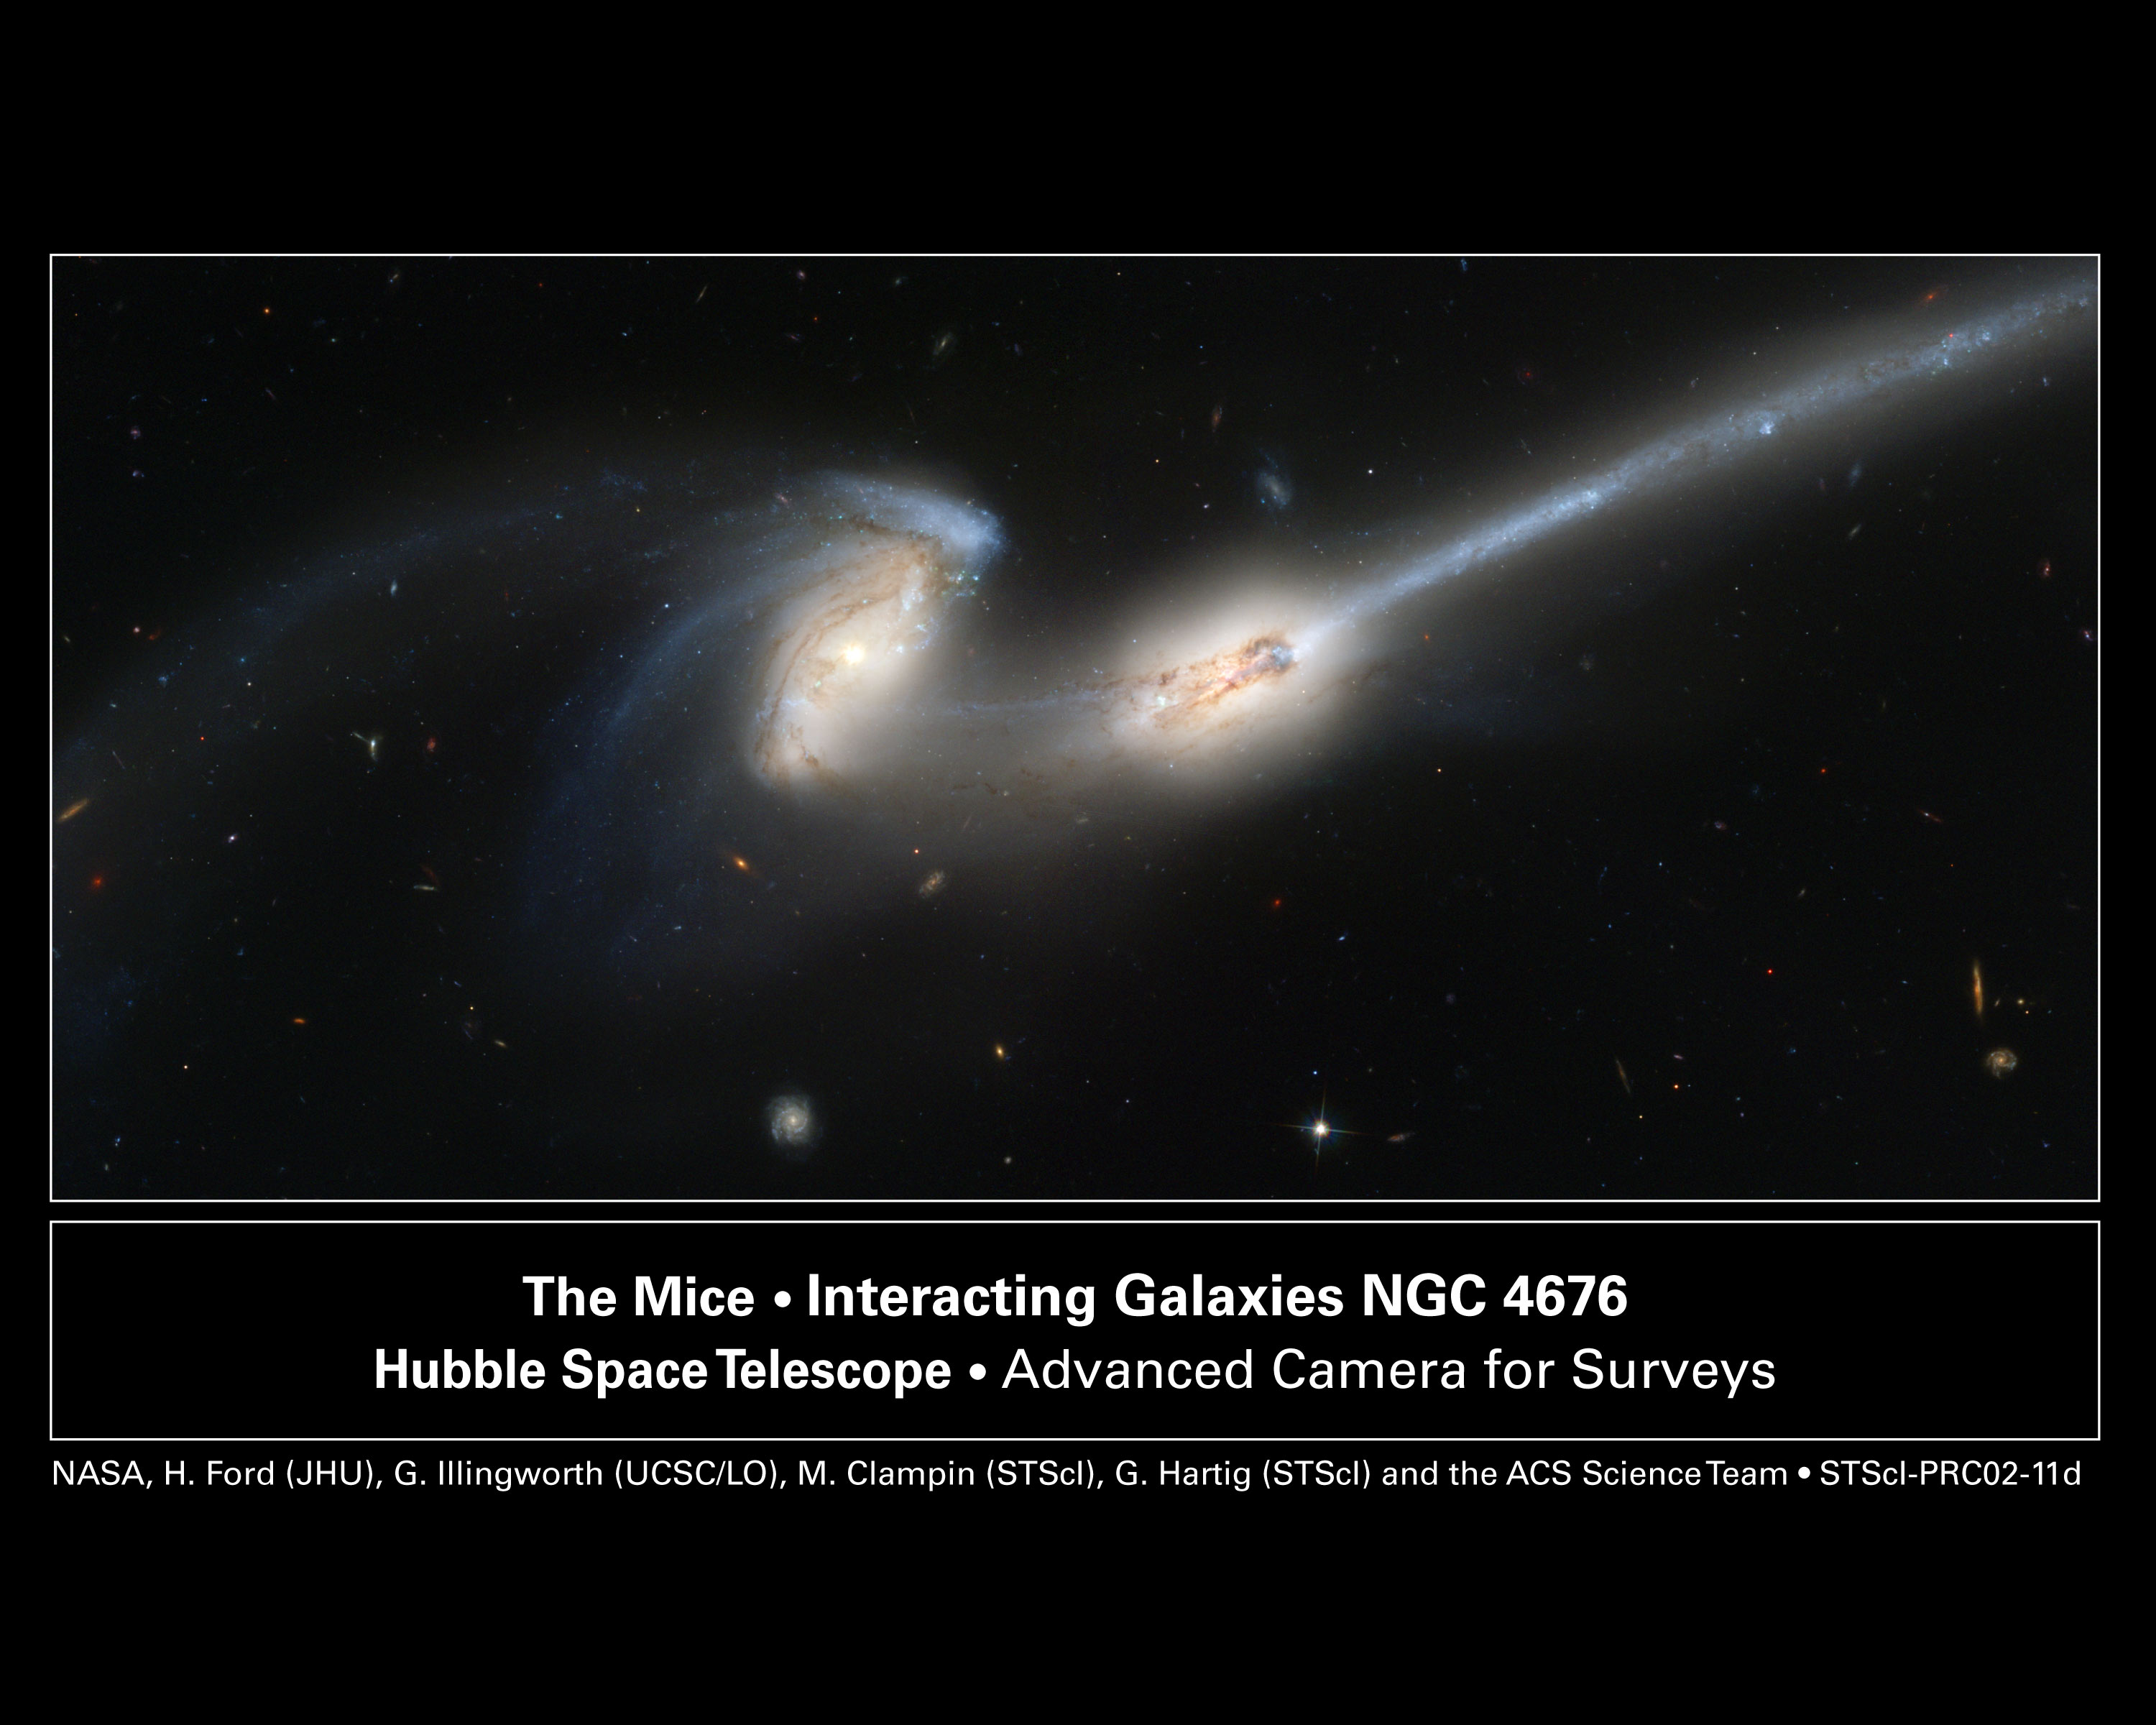 NGC 4676: stolknovenie "myshek"